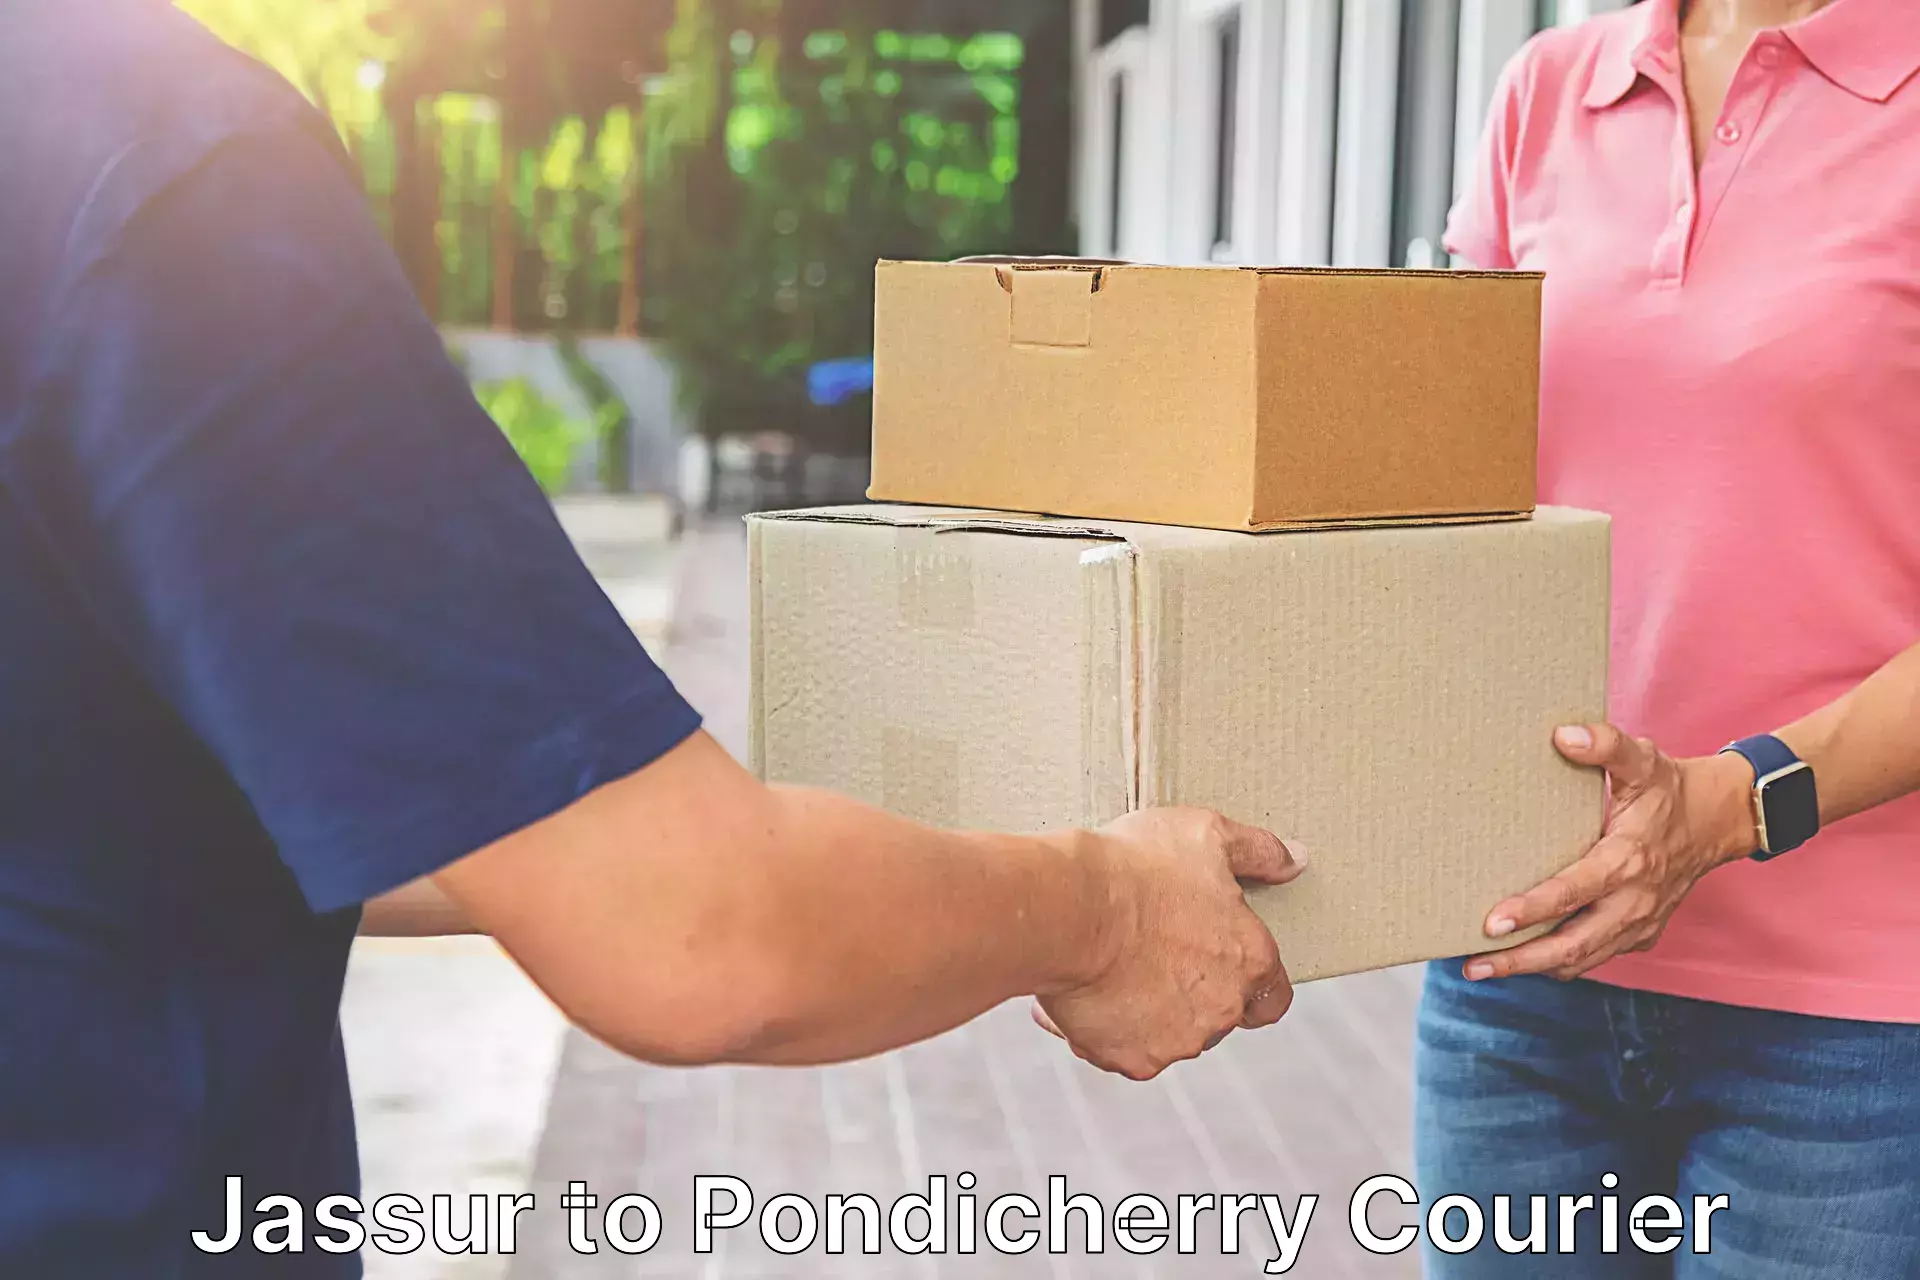 Nationwide parcel services Jassur to Pondicherry